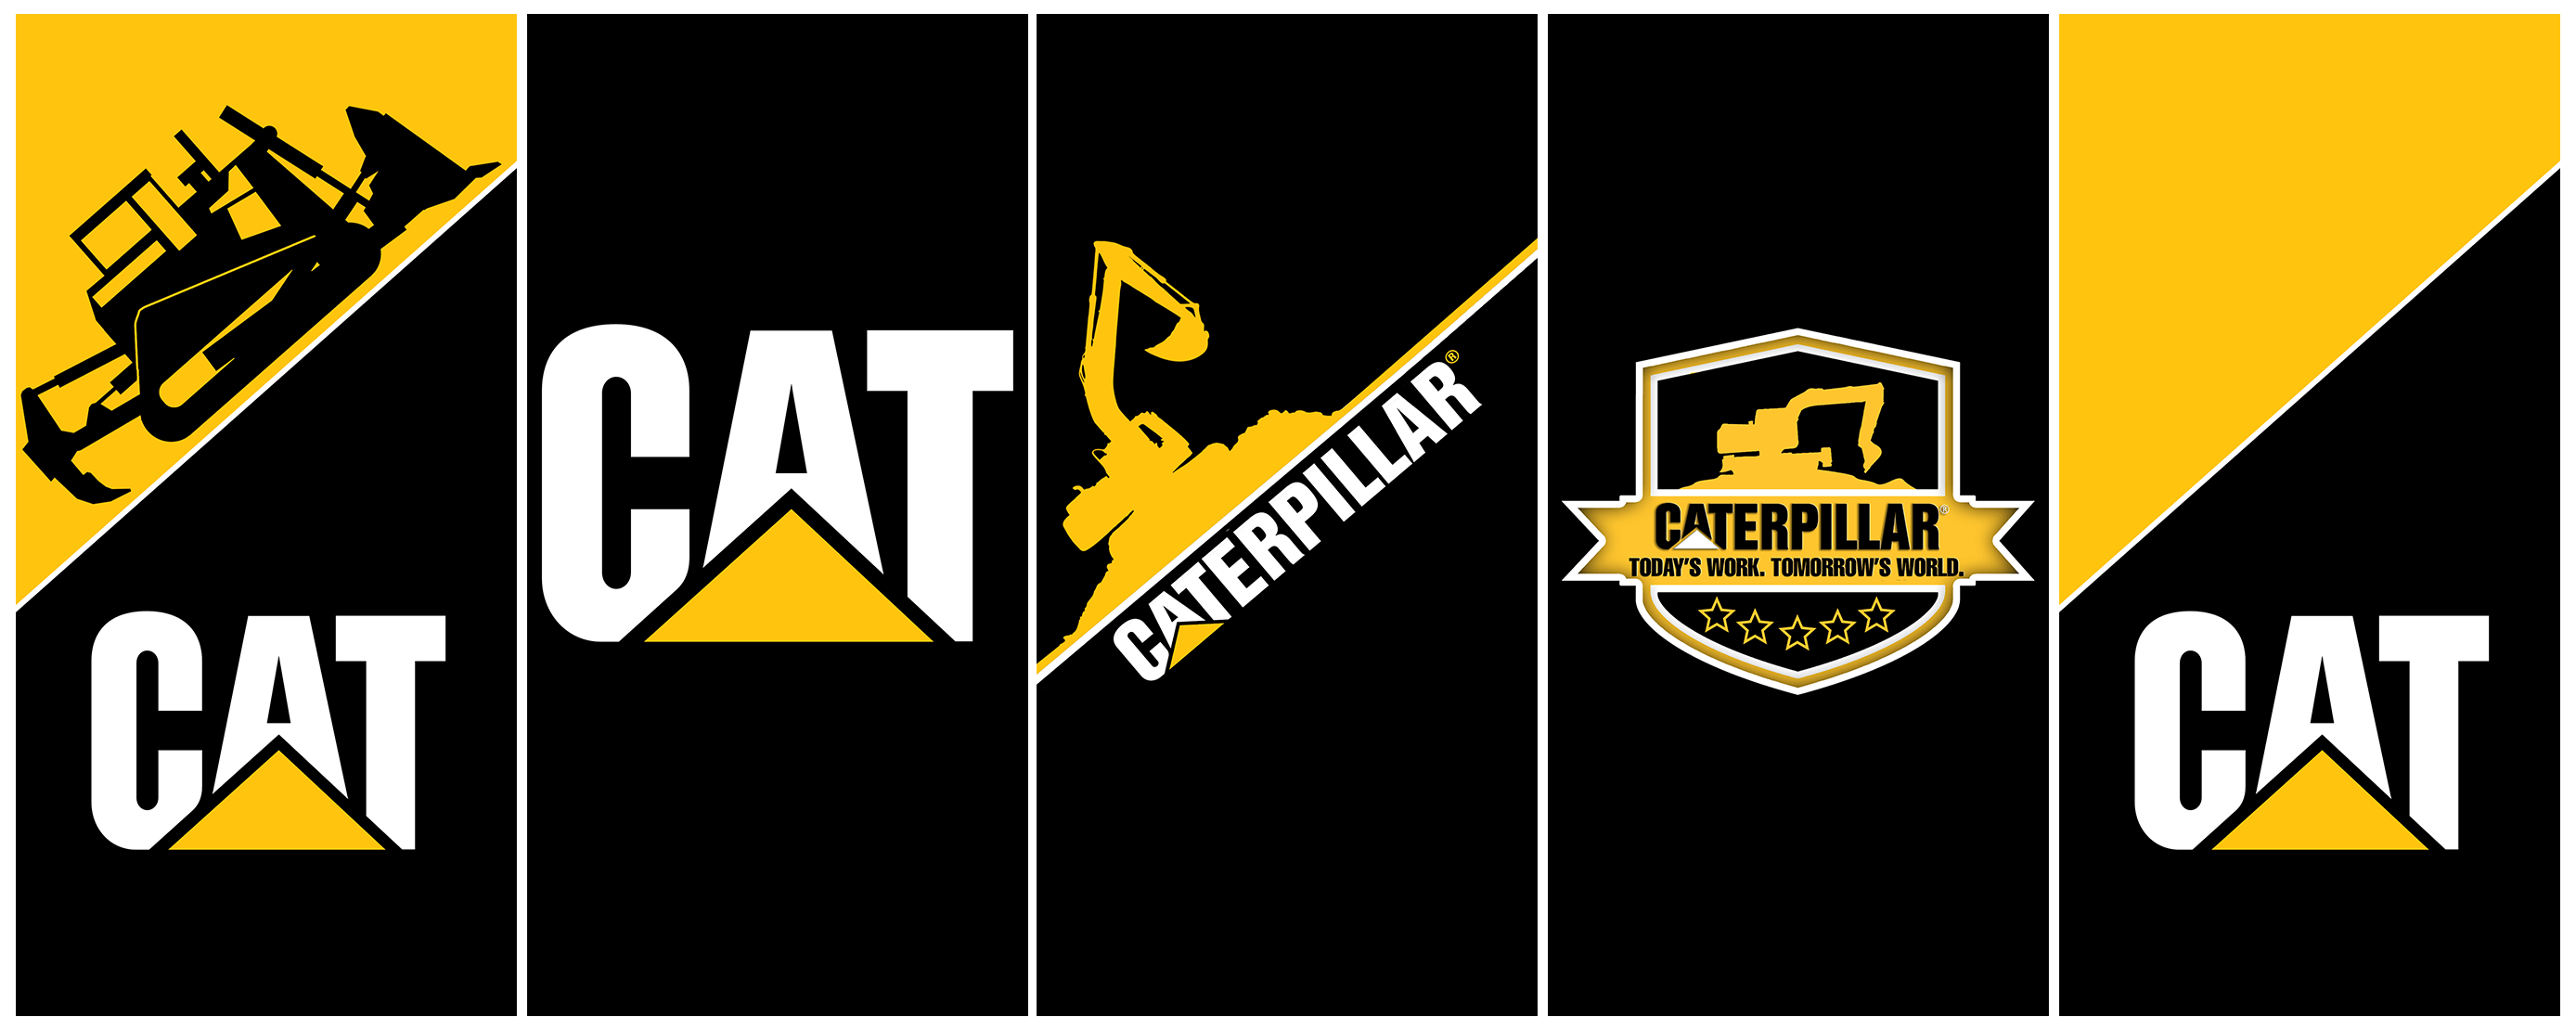 Caterpillar Logo Wallpapers Top Free Caterpillar Logo Backgrounds